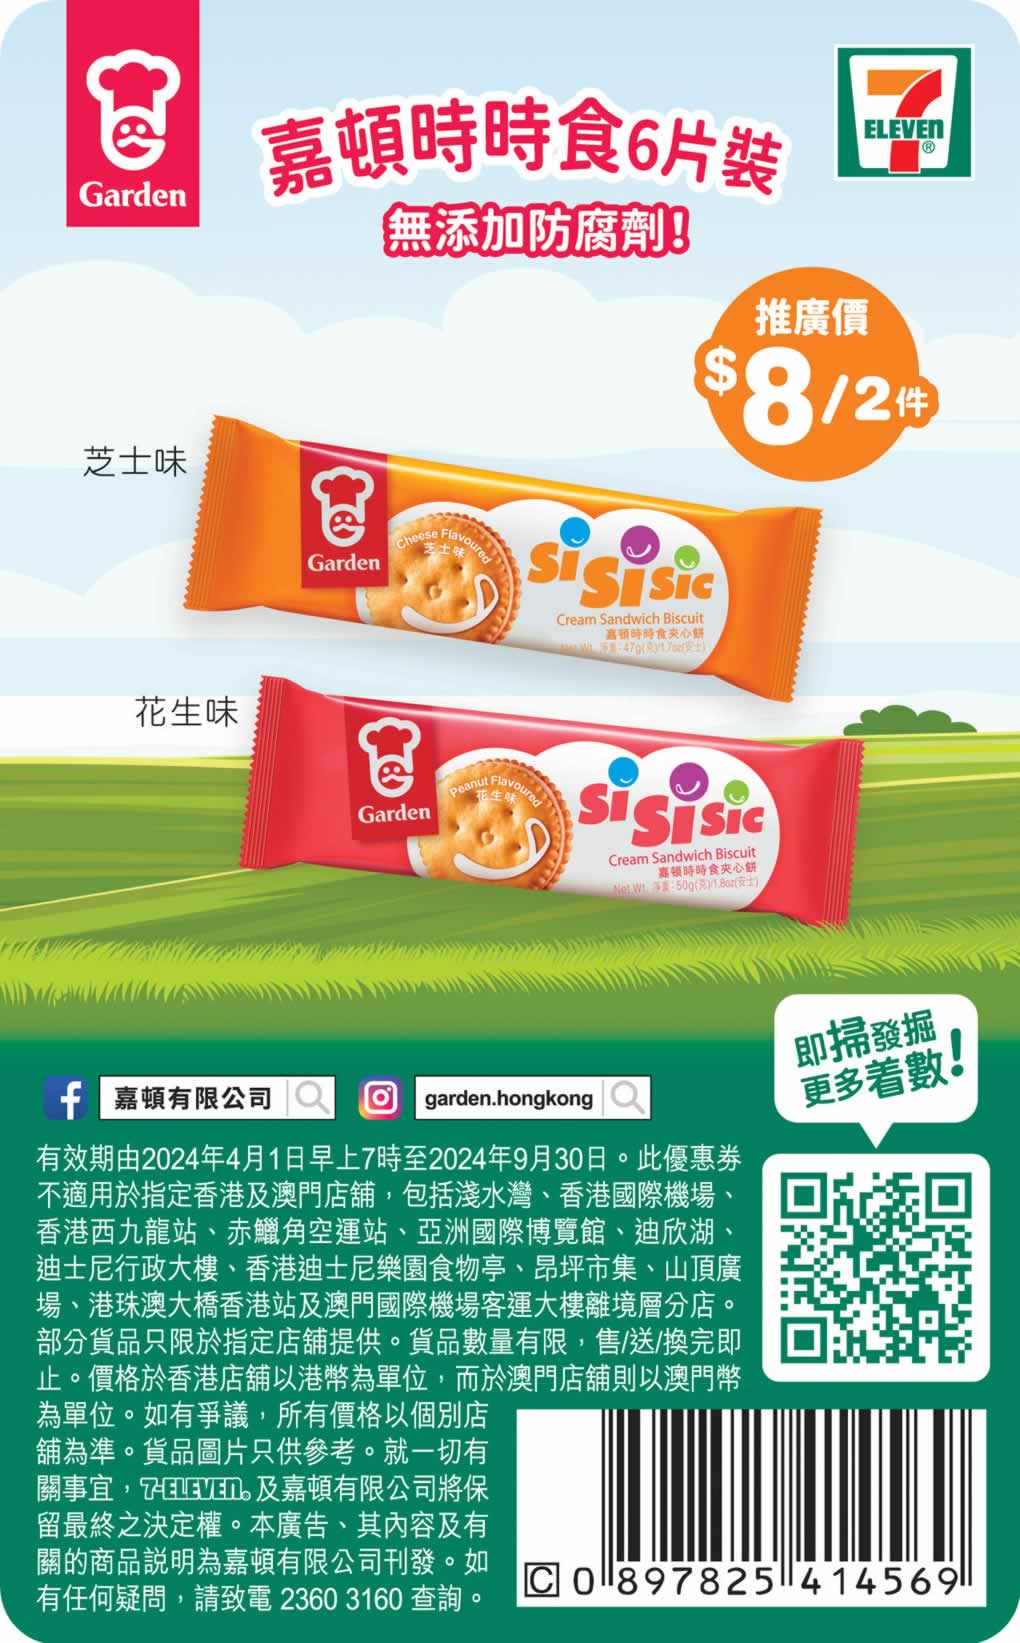 Garden 嘉頓：全線餅乾產品加多1包優惠@惠康(4月22日更新)圖片8